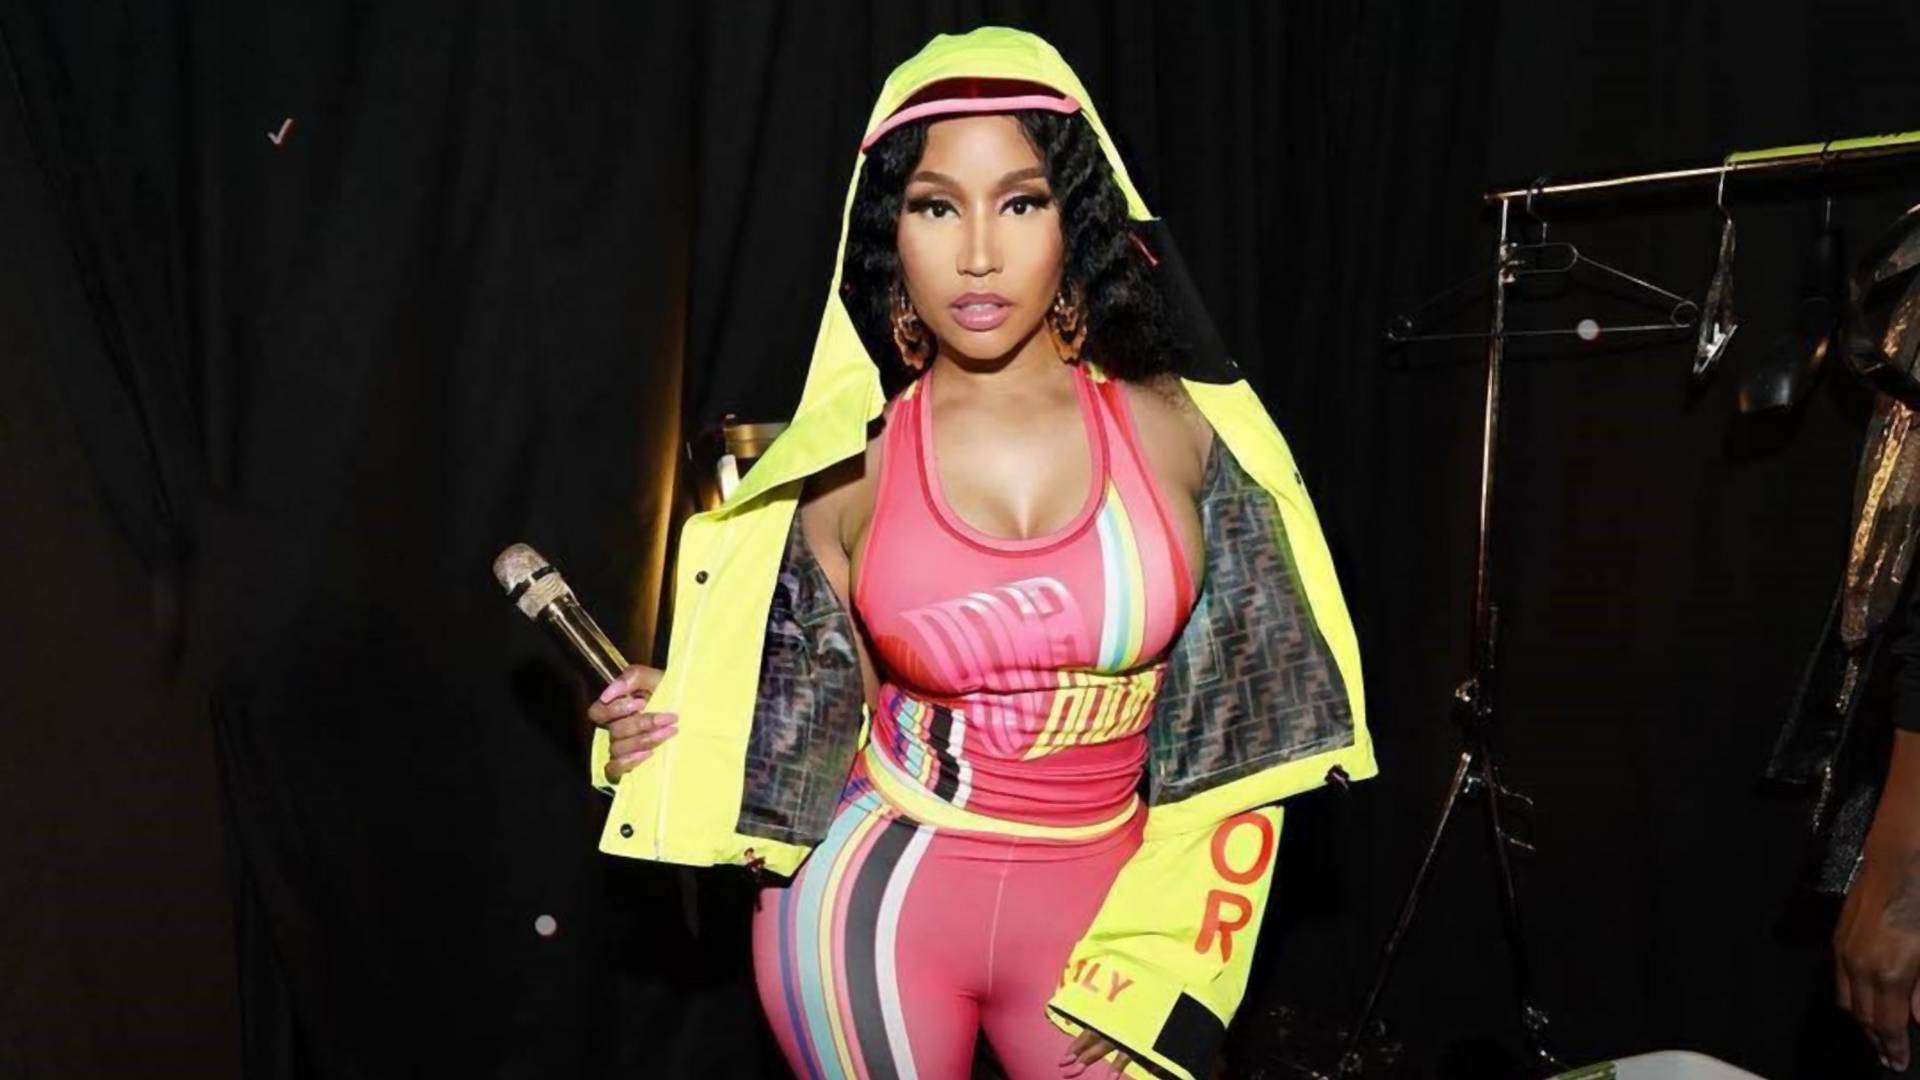 Meglepő bejelentést tett Nicki Minaj, többen kételkednek is benne